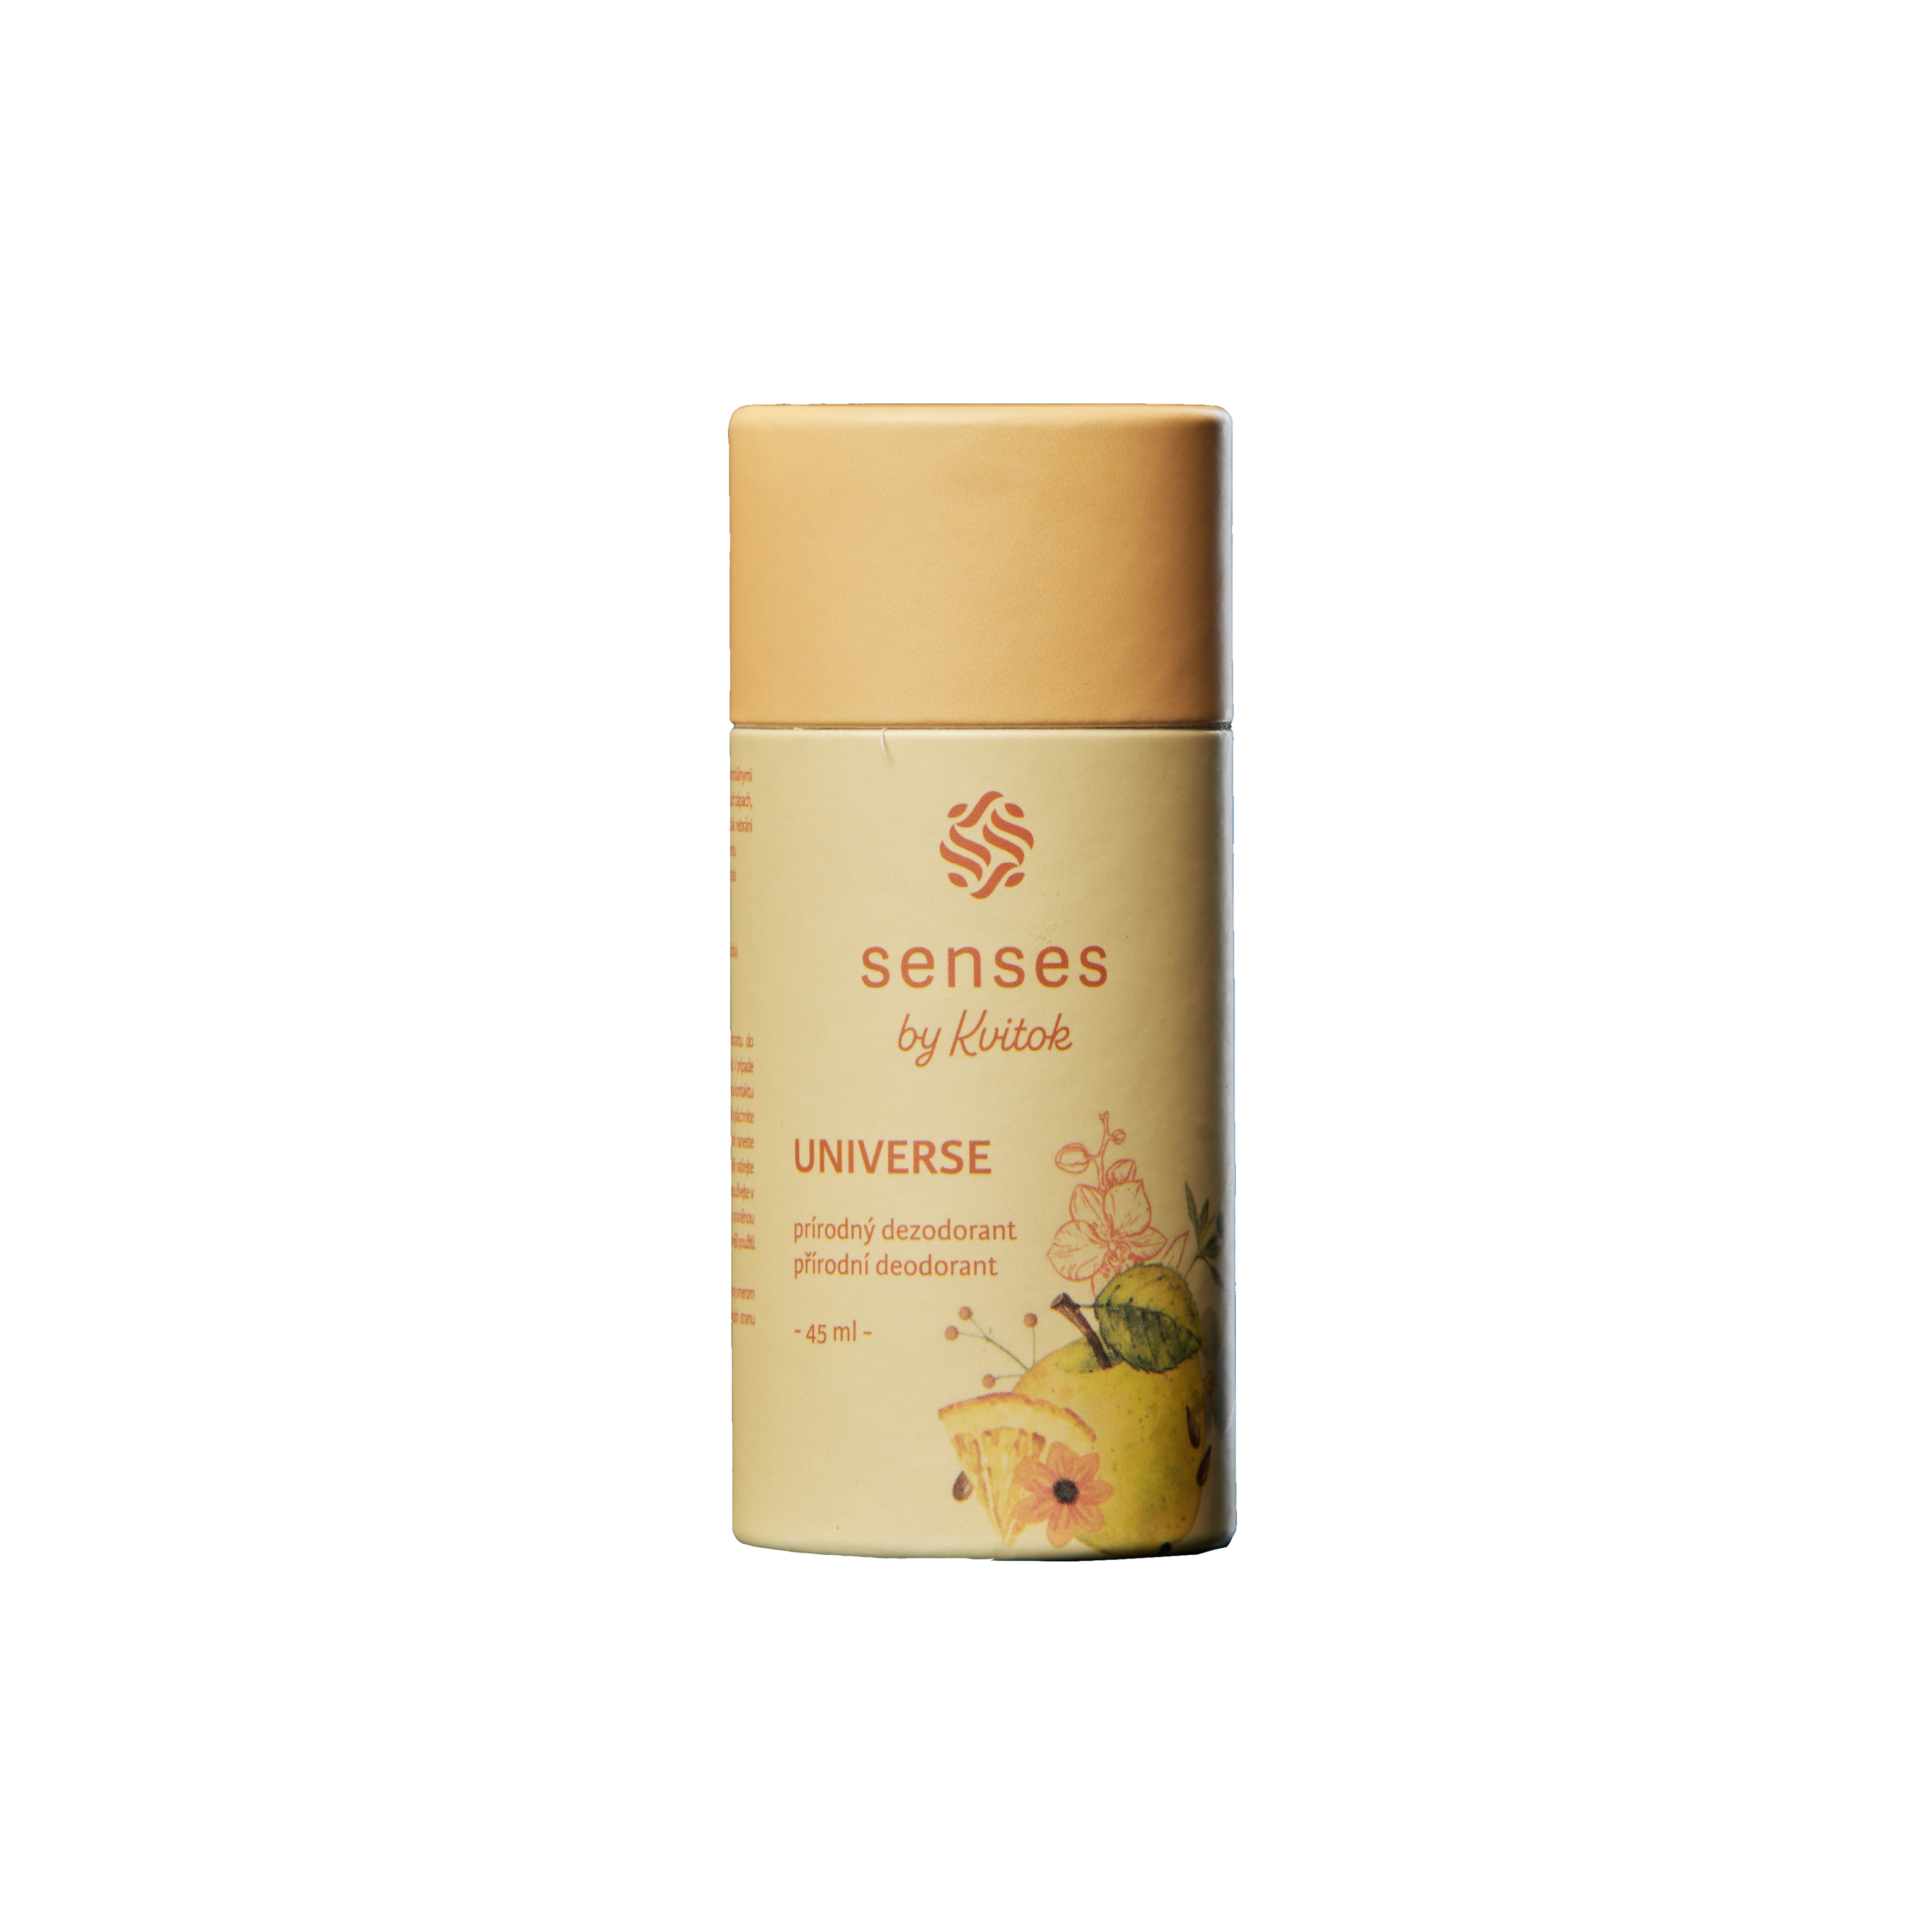 Kvitok Senses Tuhý deodorant Universe (45 ml) - účinný až 24 hodin Kvitok